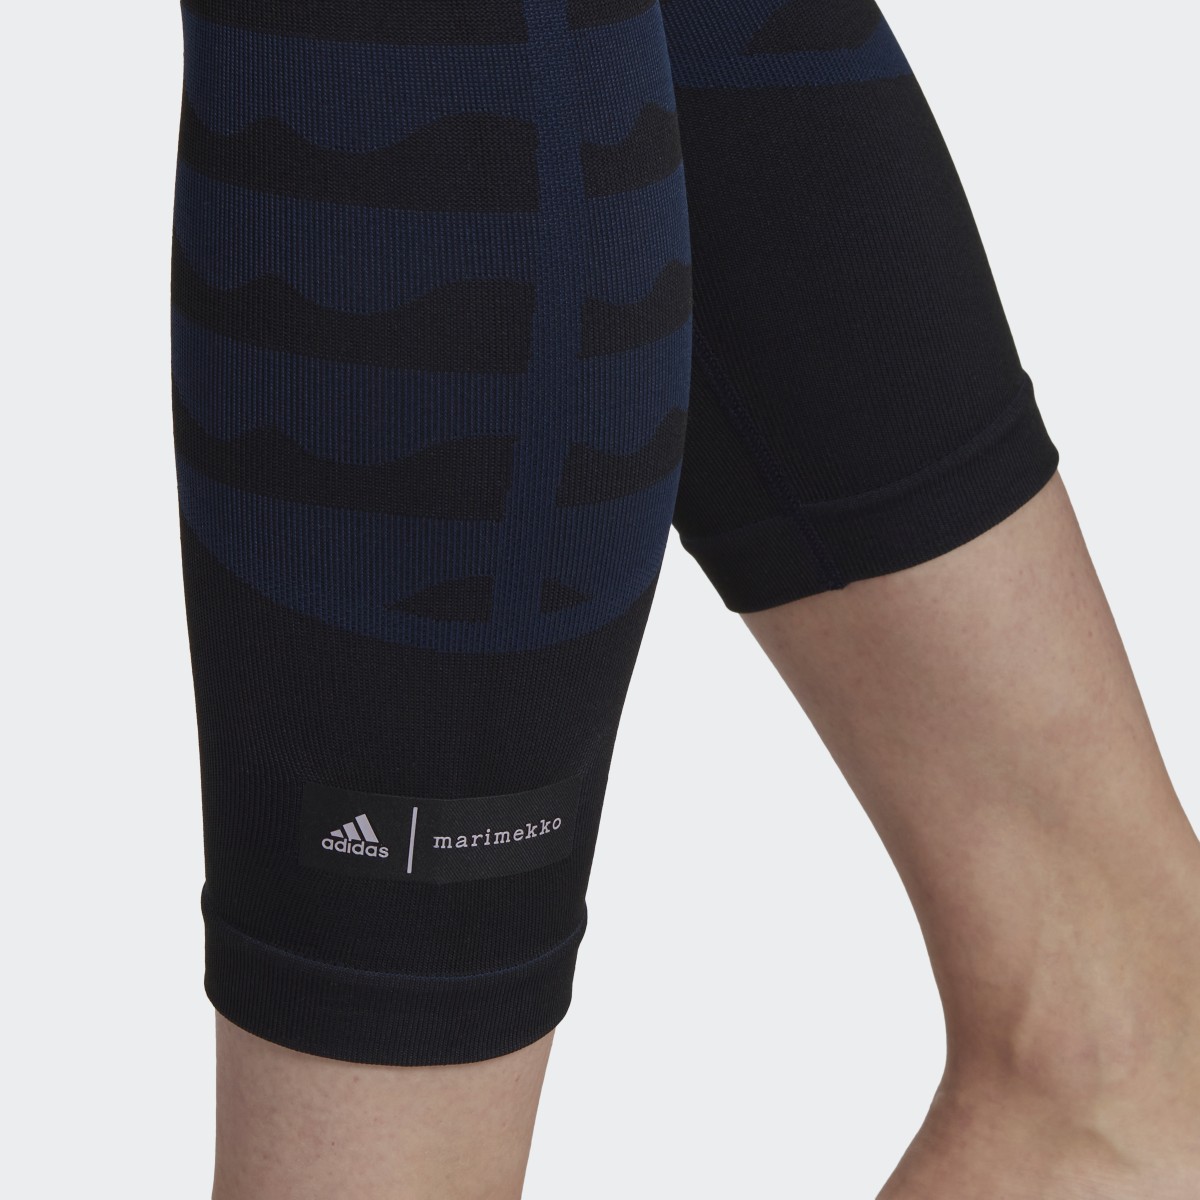 Adidas Leggings 7/8 Marimekko AEROKNIT. 5